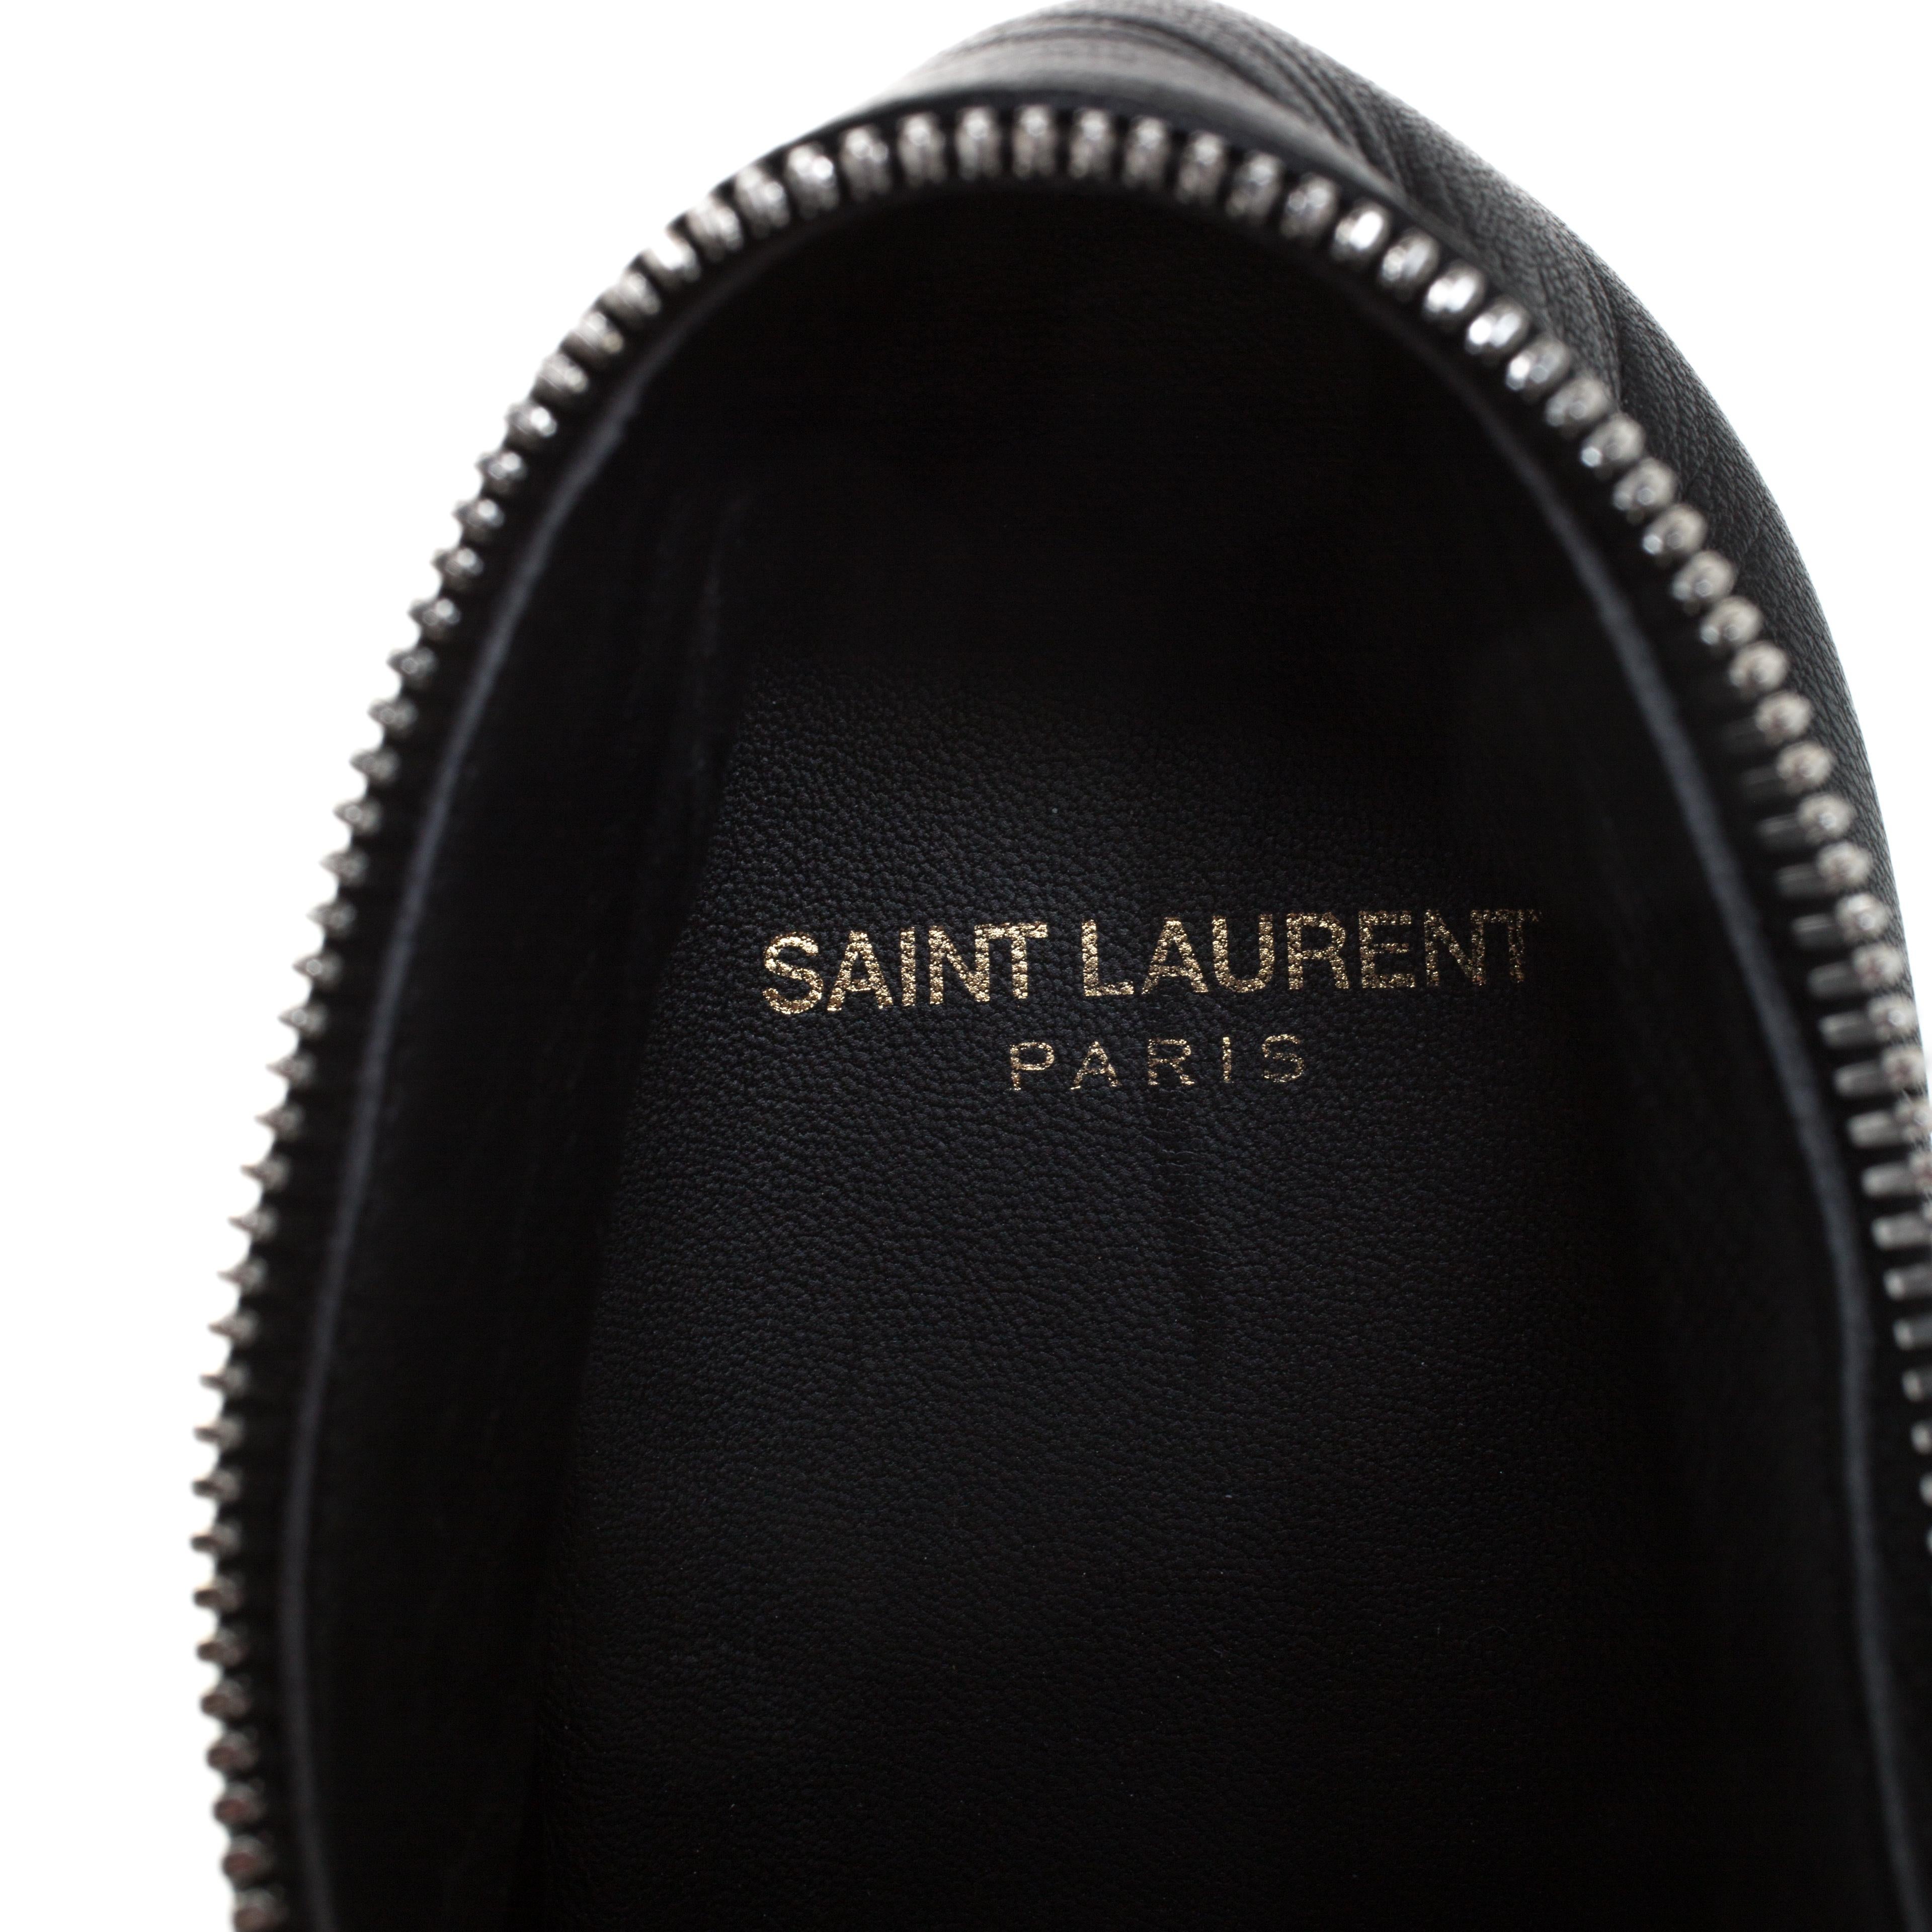 Saint Laurent Paris Black Leather Lace Up Zip Up Low Top Sneakers Size 42 1